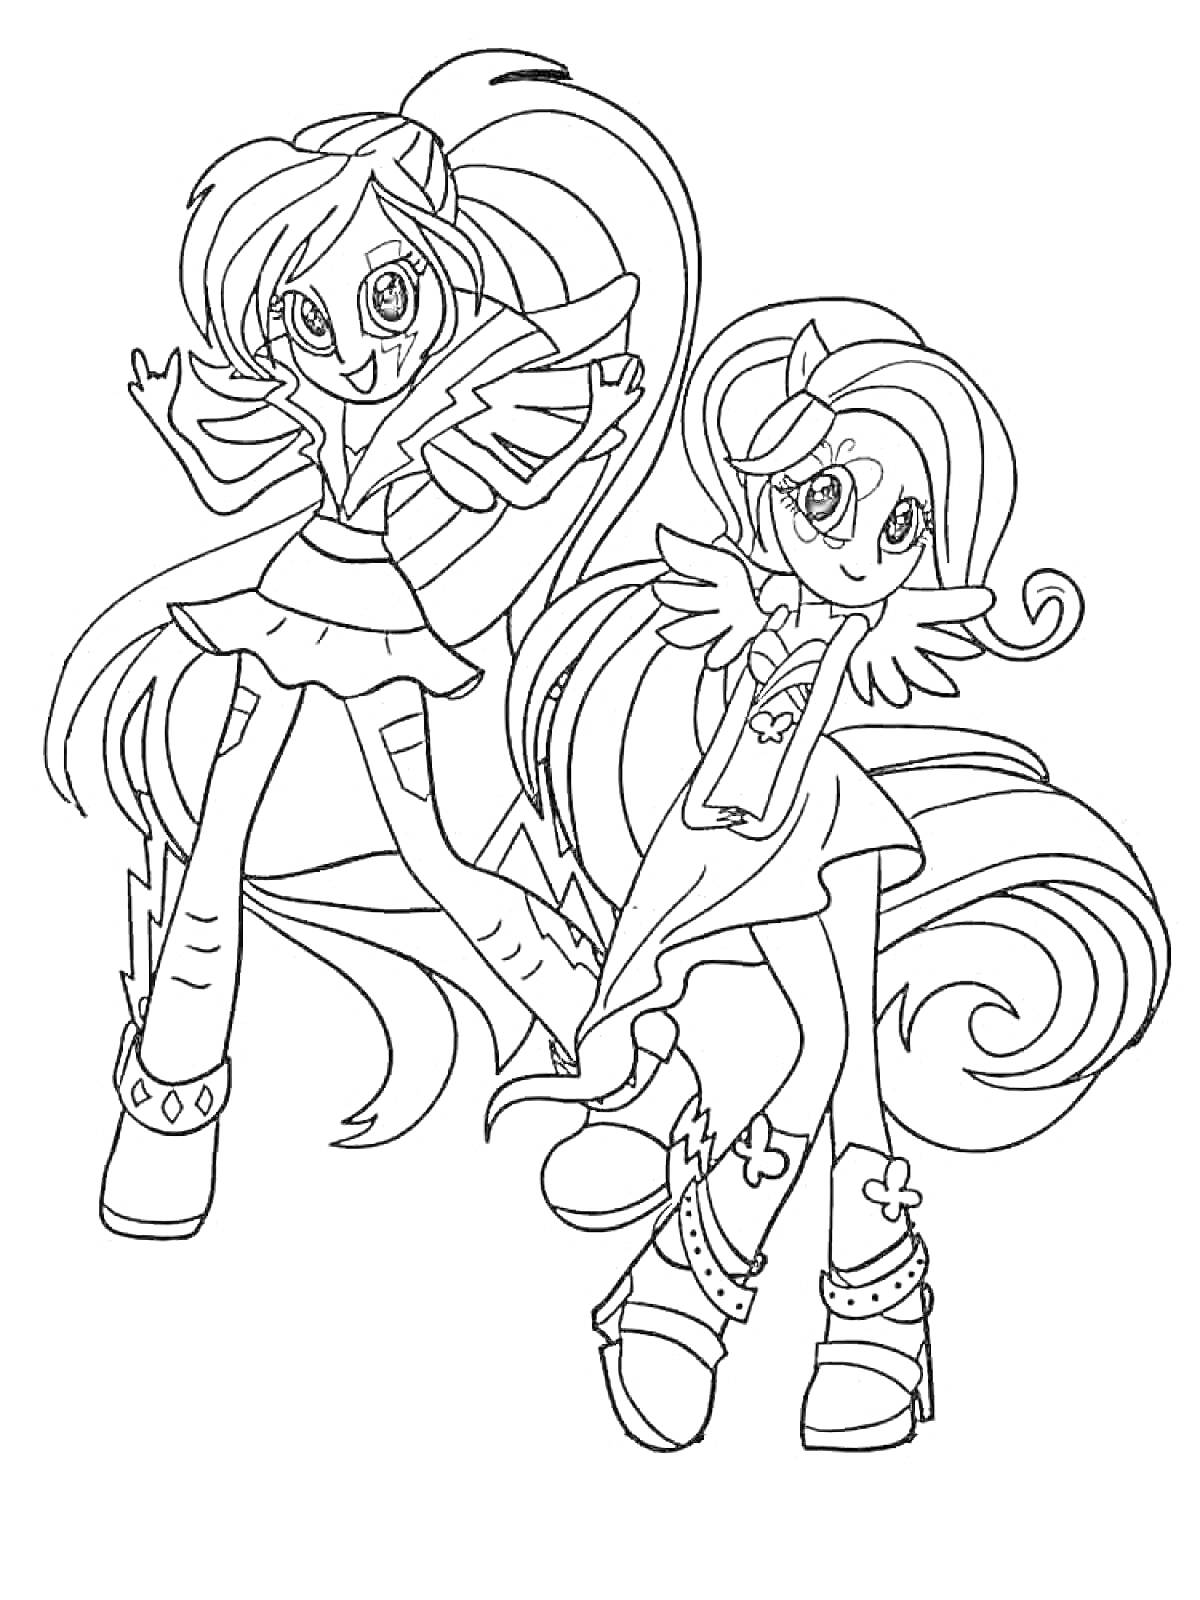 Раскраска Две девочки из Эквестрия Герлз с длинными волосами и крыльями, в модных нарядах и обуви на высоких платформах.